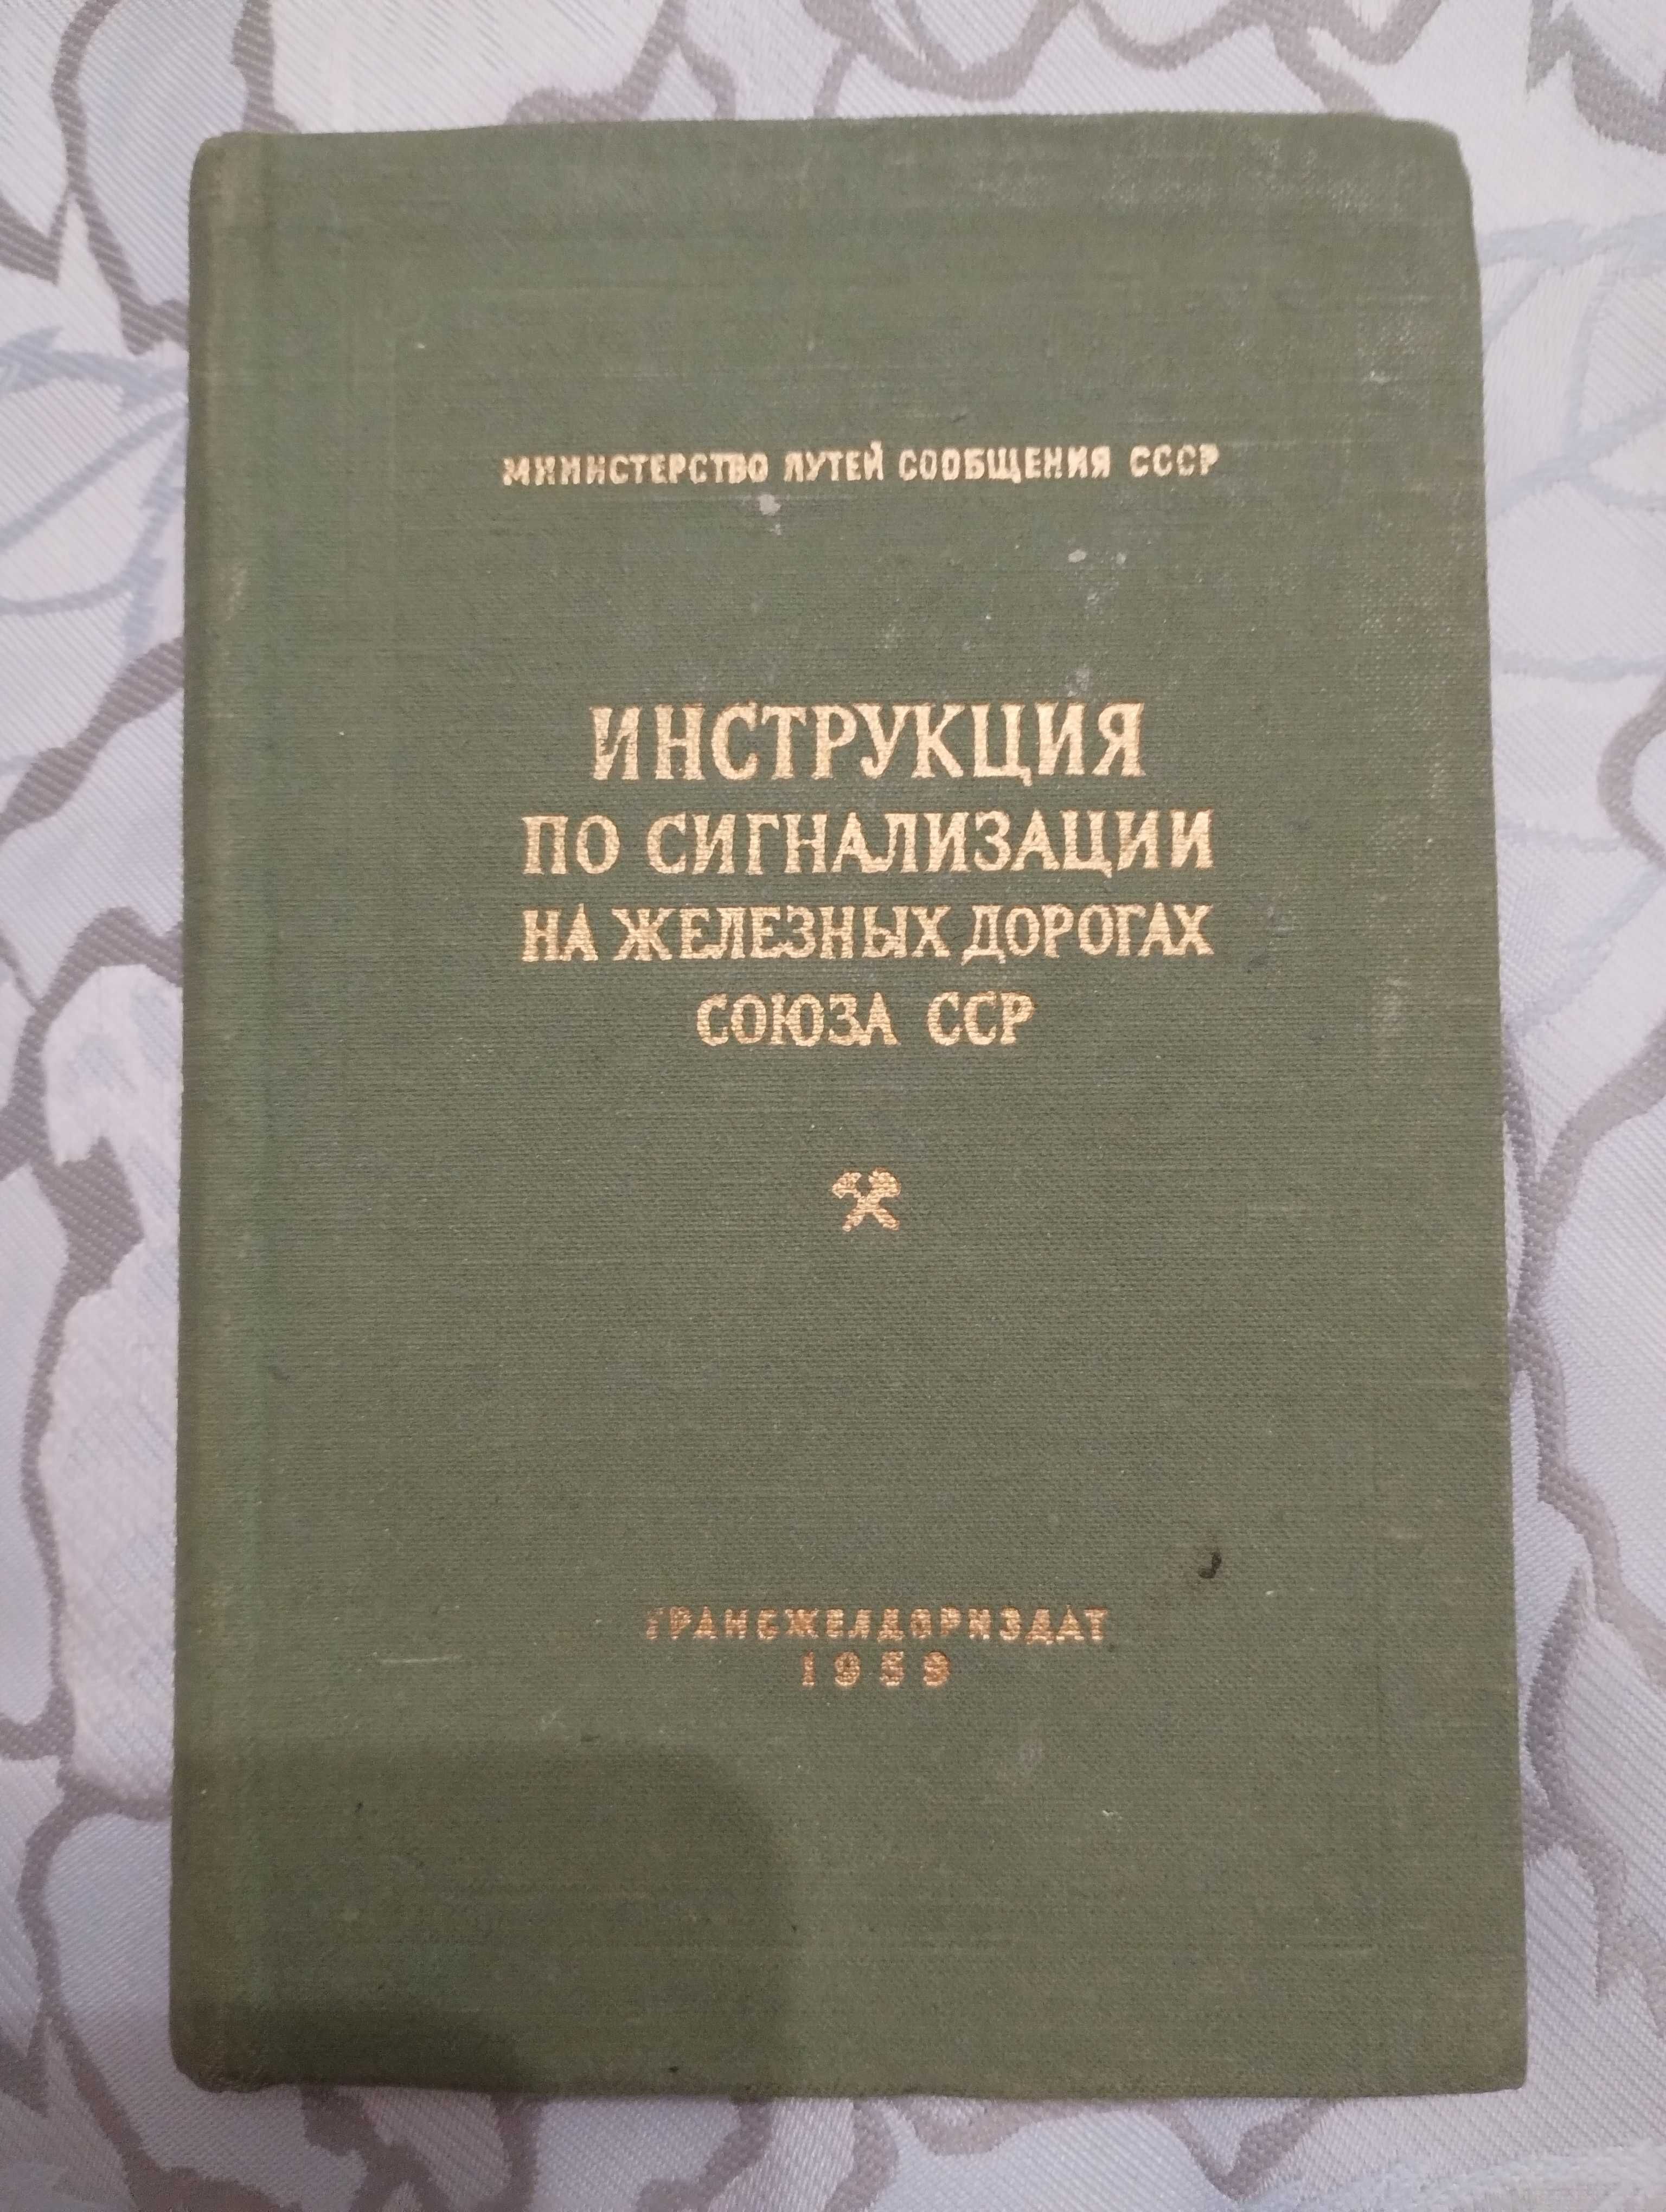 "Інструкция по сигнализации на железных дорогах союза ССР" 1959 год.